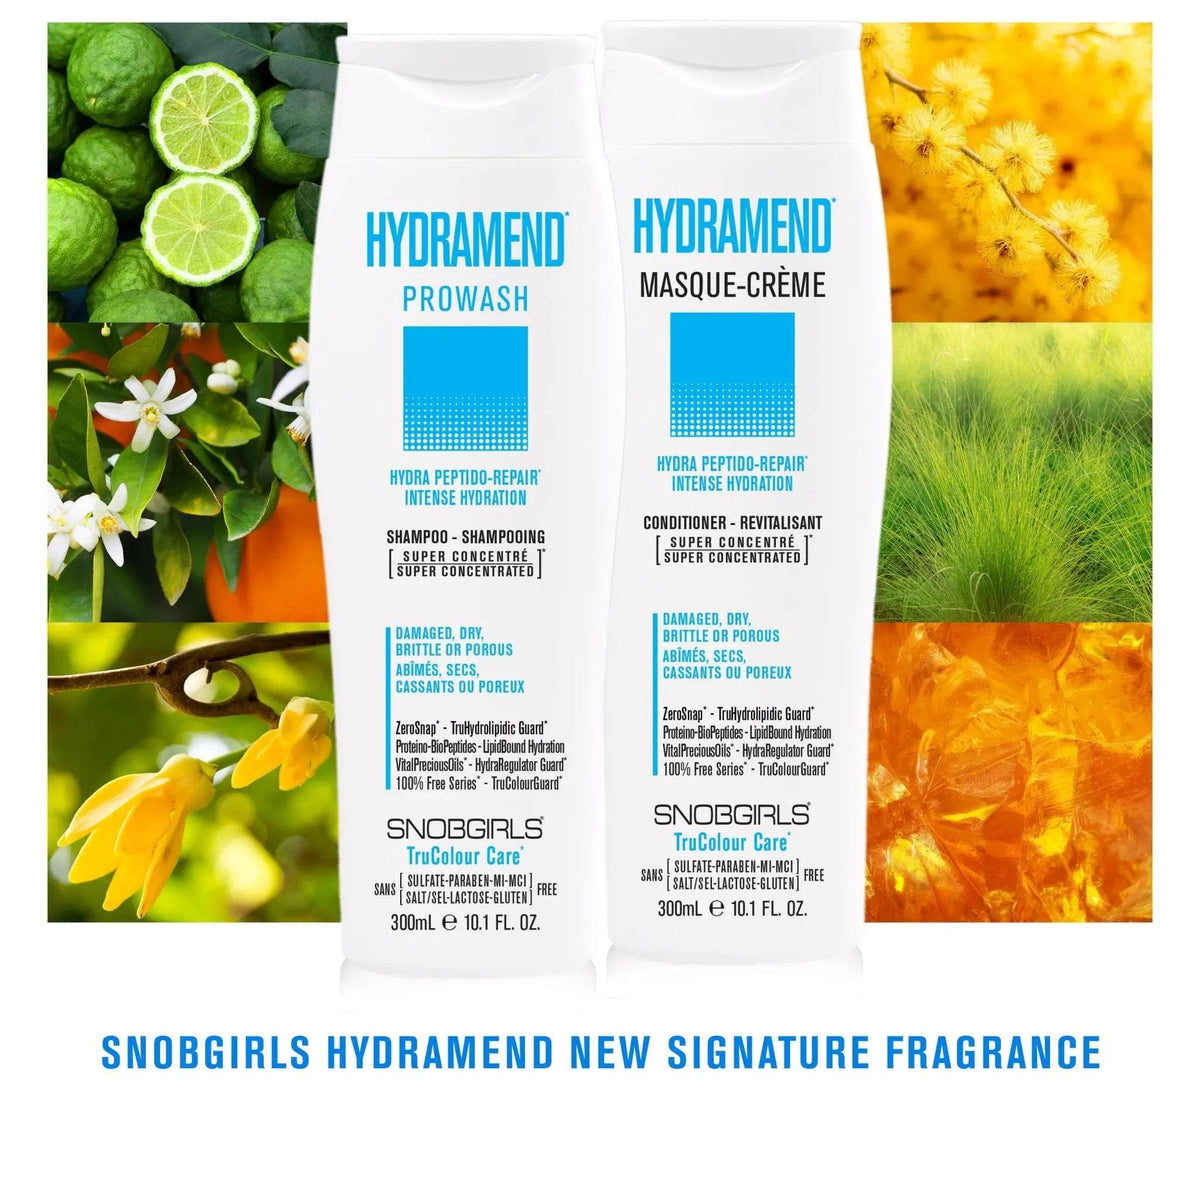 HYDRAMEND Prowash (shampoo) 300 mL - SNOBGIRLS Canada